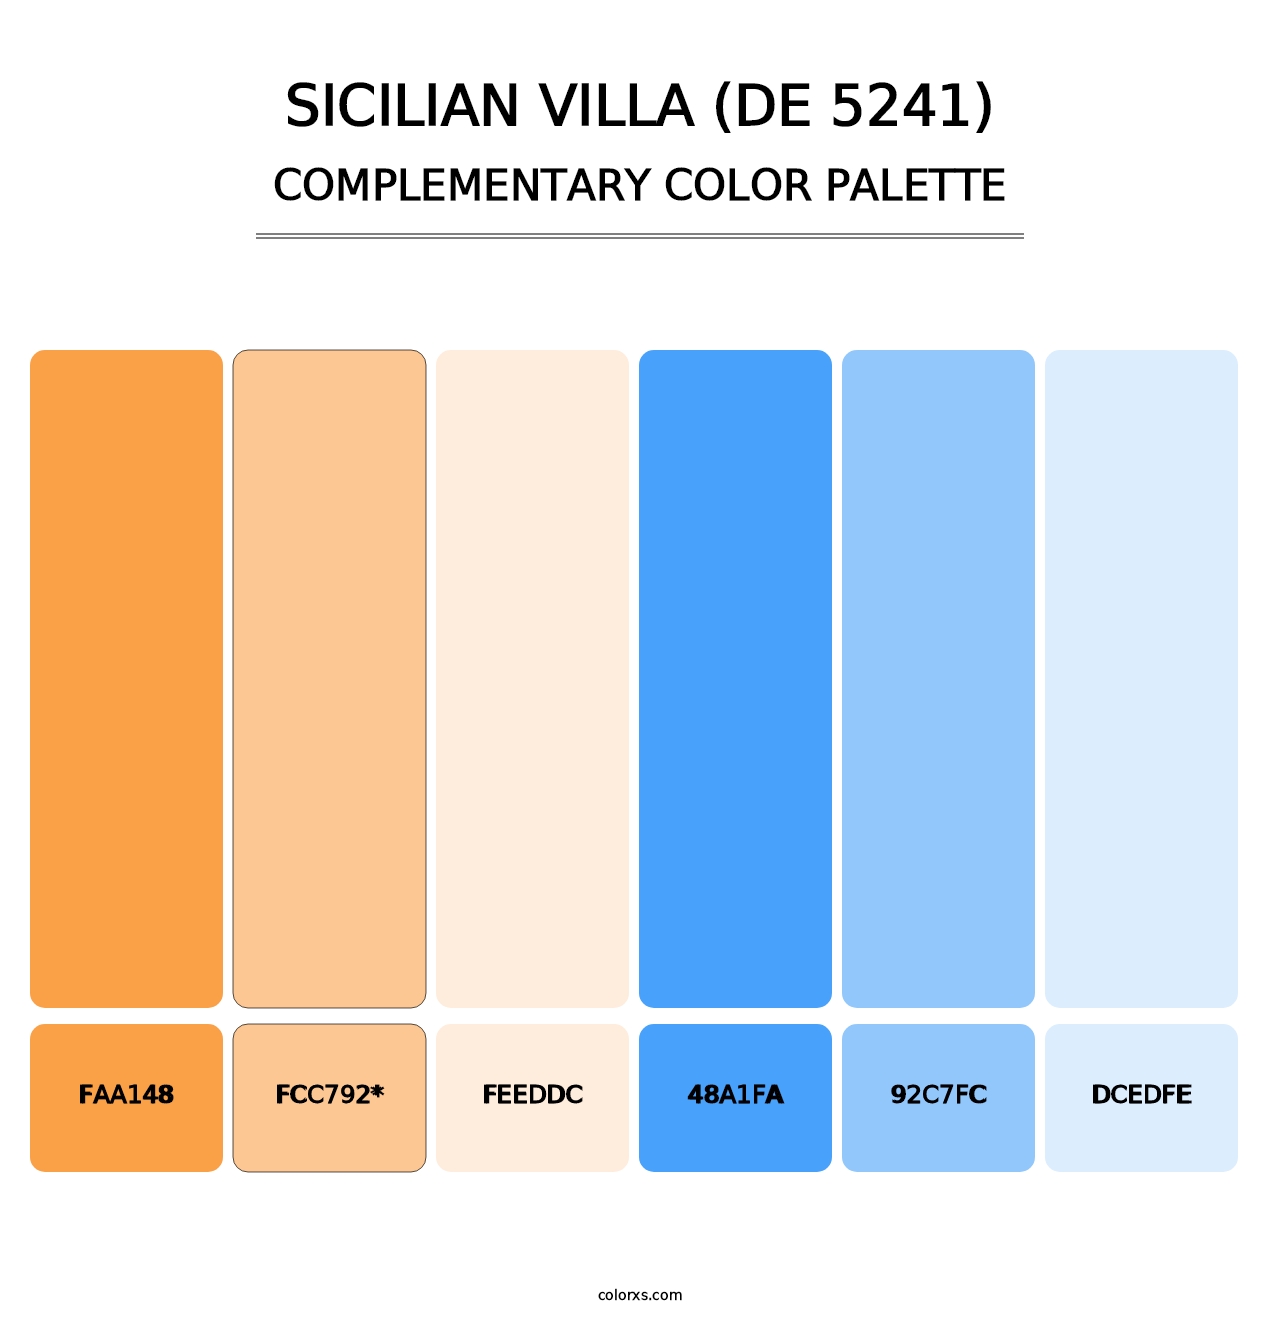 Sicilian Villa (DE 5241) - Complementary Color Palette